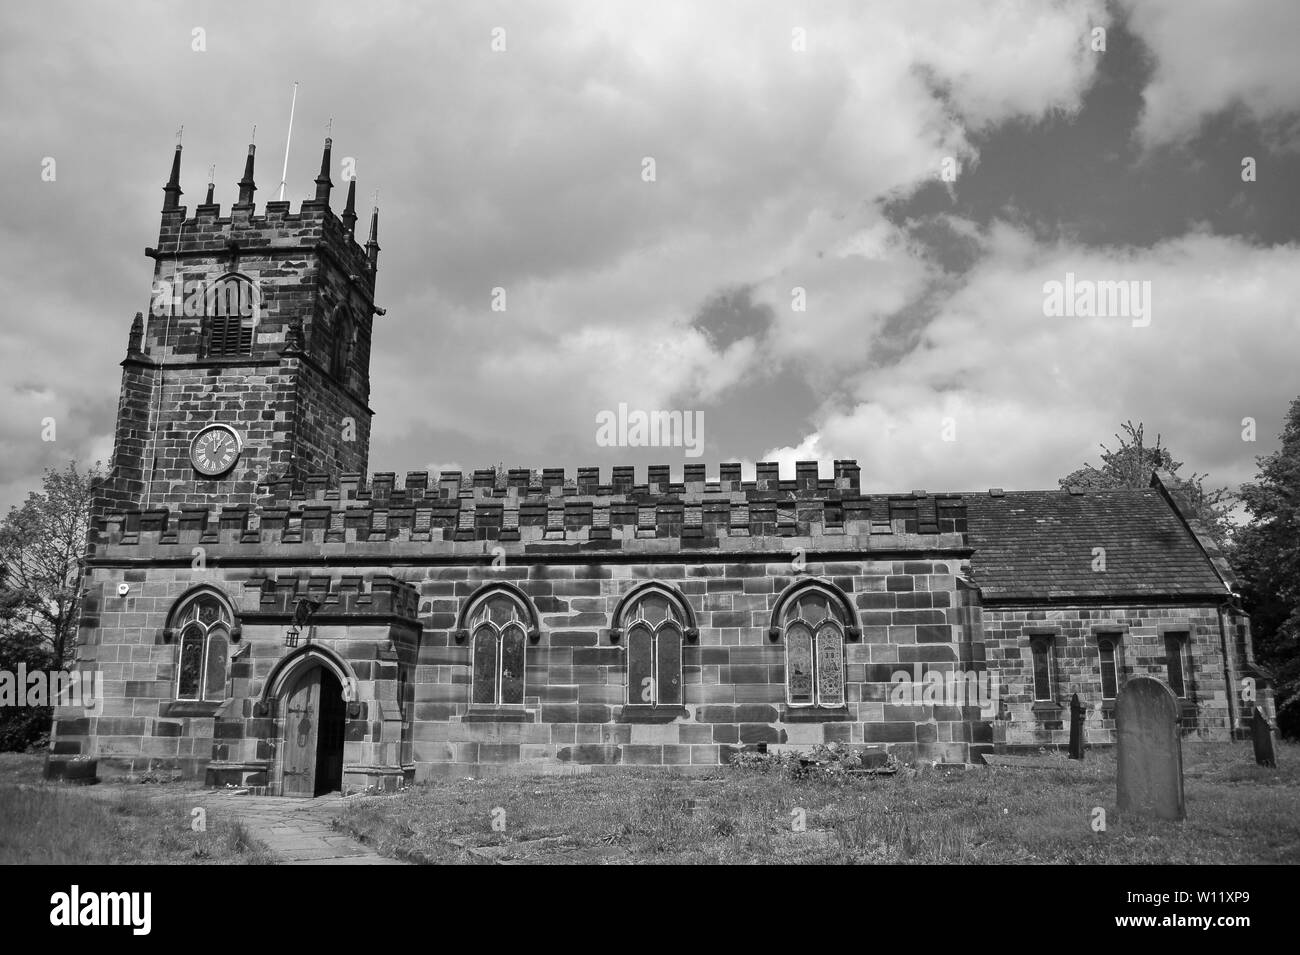 Bilder von Bootle Gebäude. Das Rathaus, die Christus Kirche & der Triade Gebäude Plus St Chads Kirche Kirkby und Huyton Pfarrkirche Huyton. Stockfoto